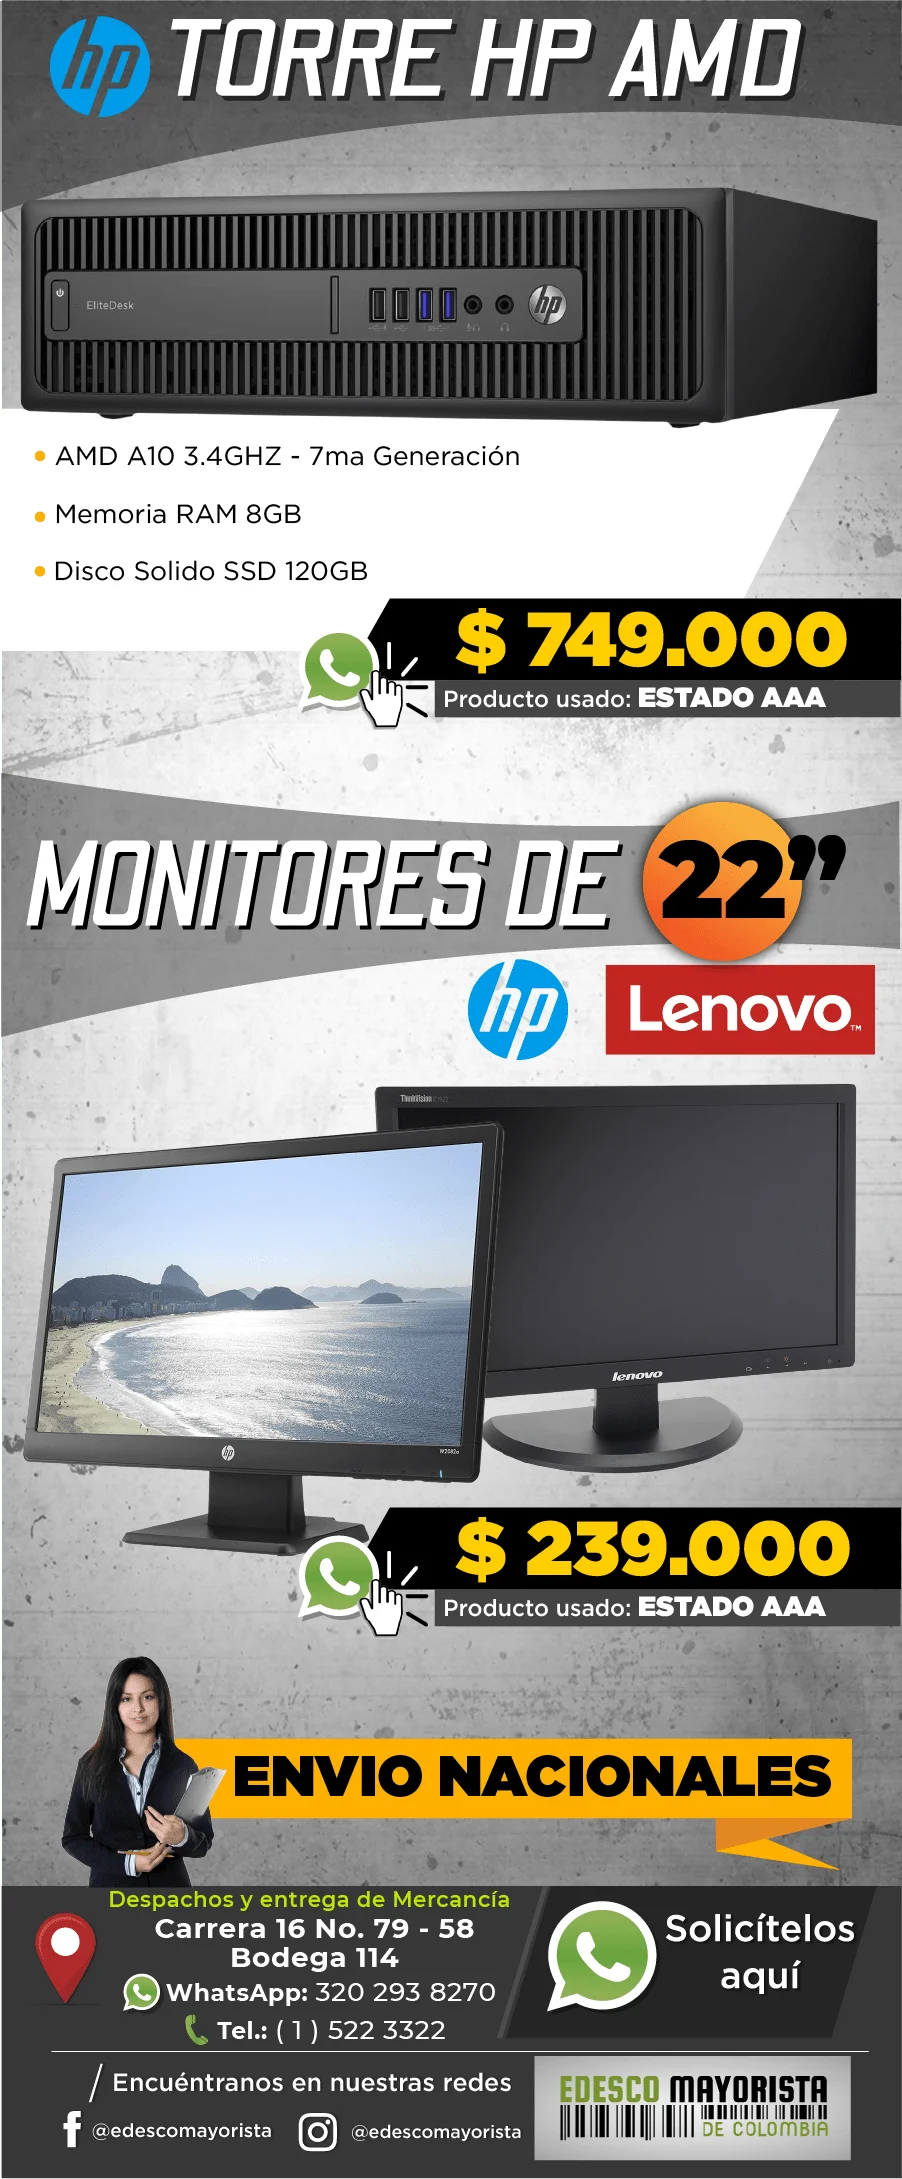 Torre HP AMD A10 - Monitores de 22